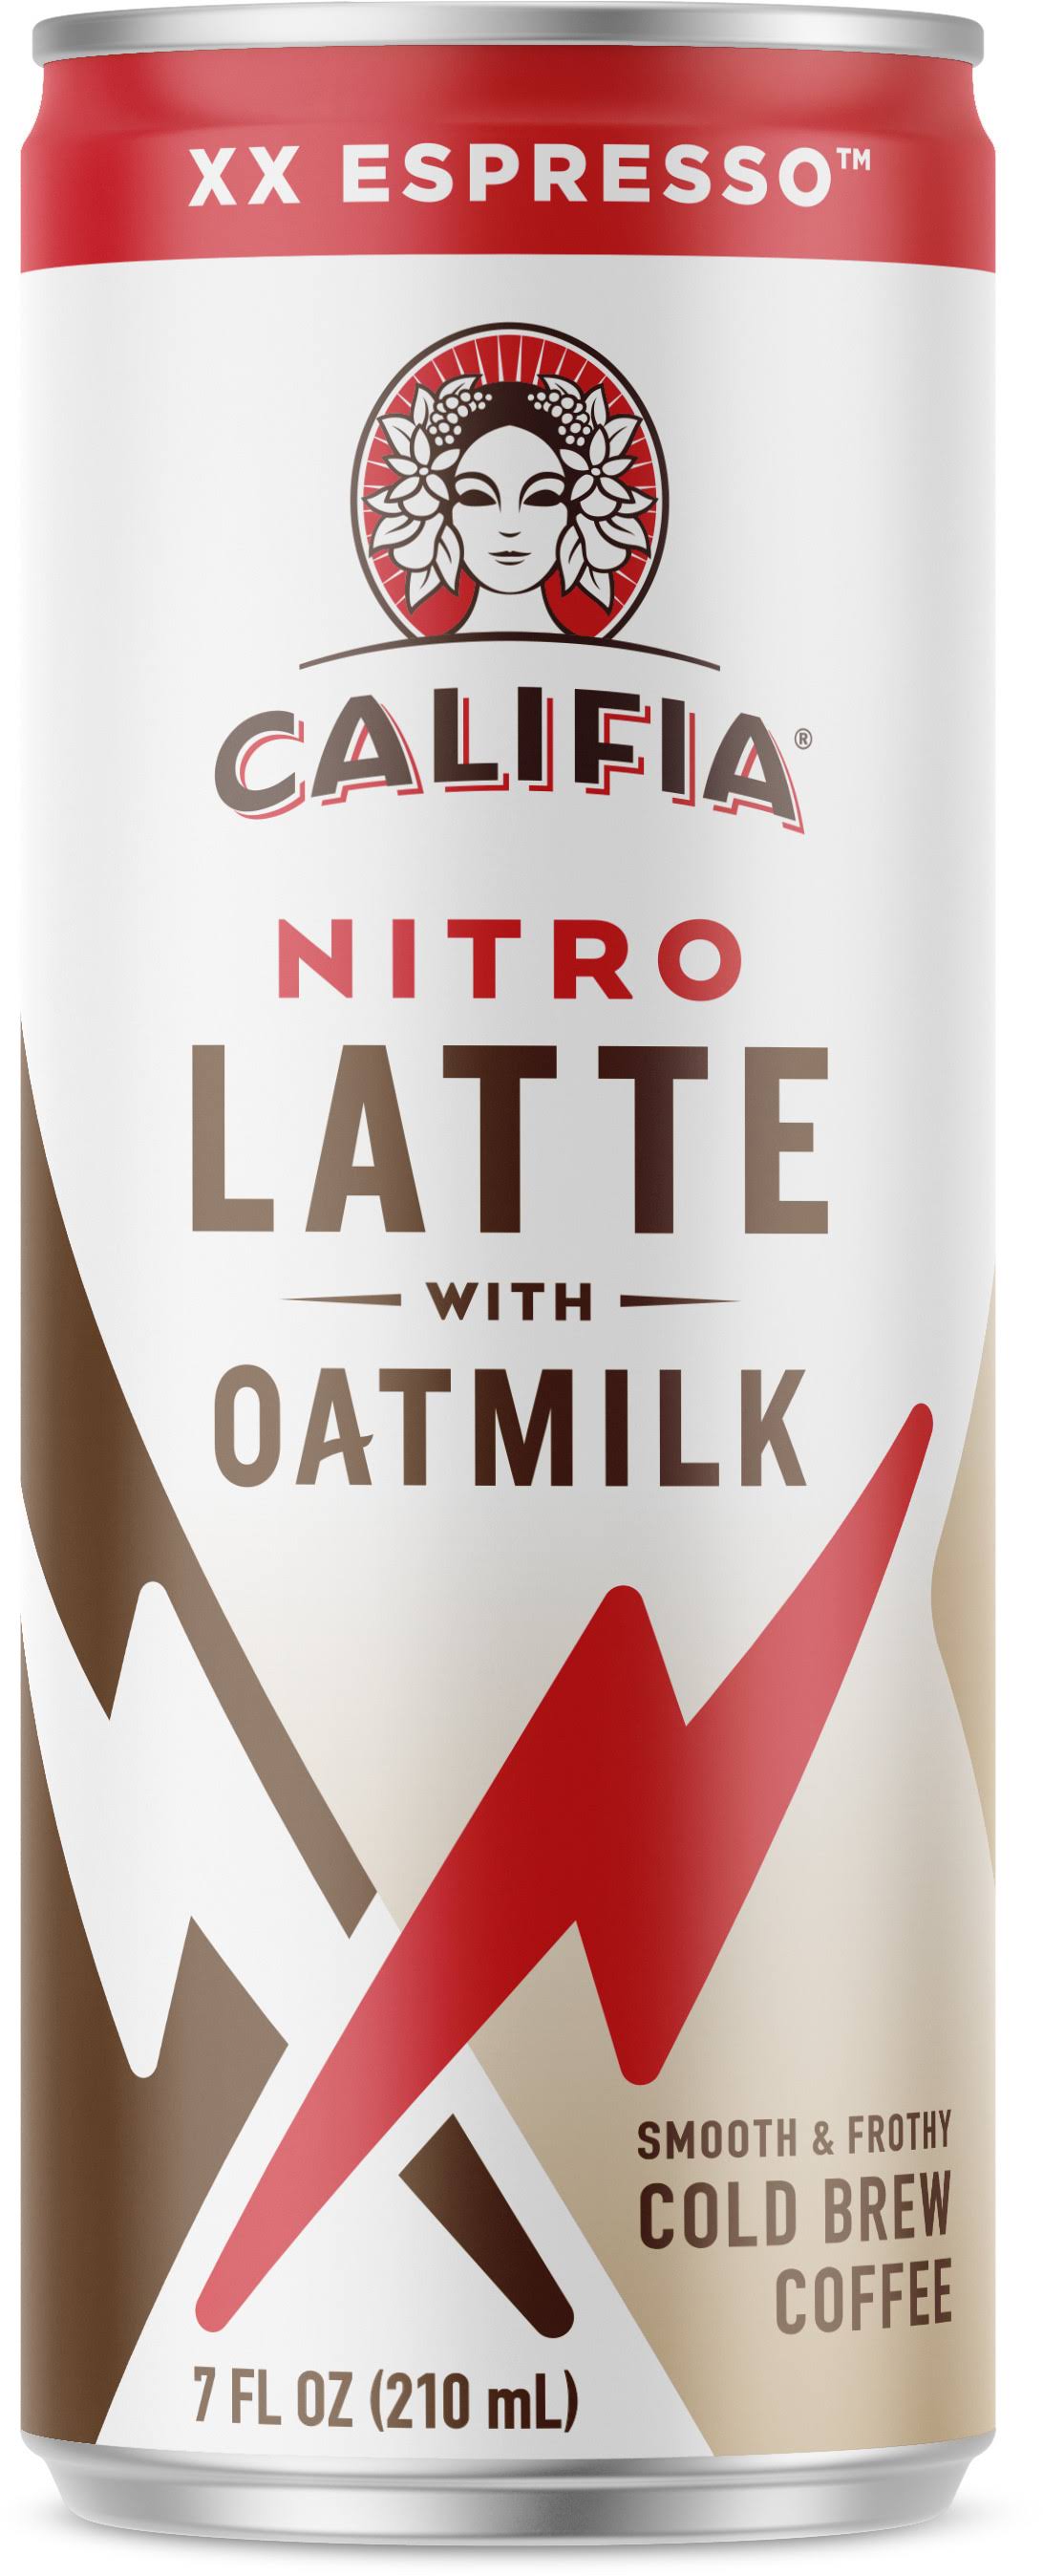 Califia Farms Nitro Latte with Oatmilk Espresso, 210ml